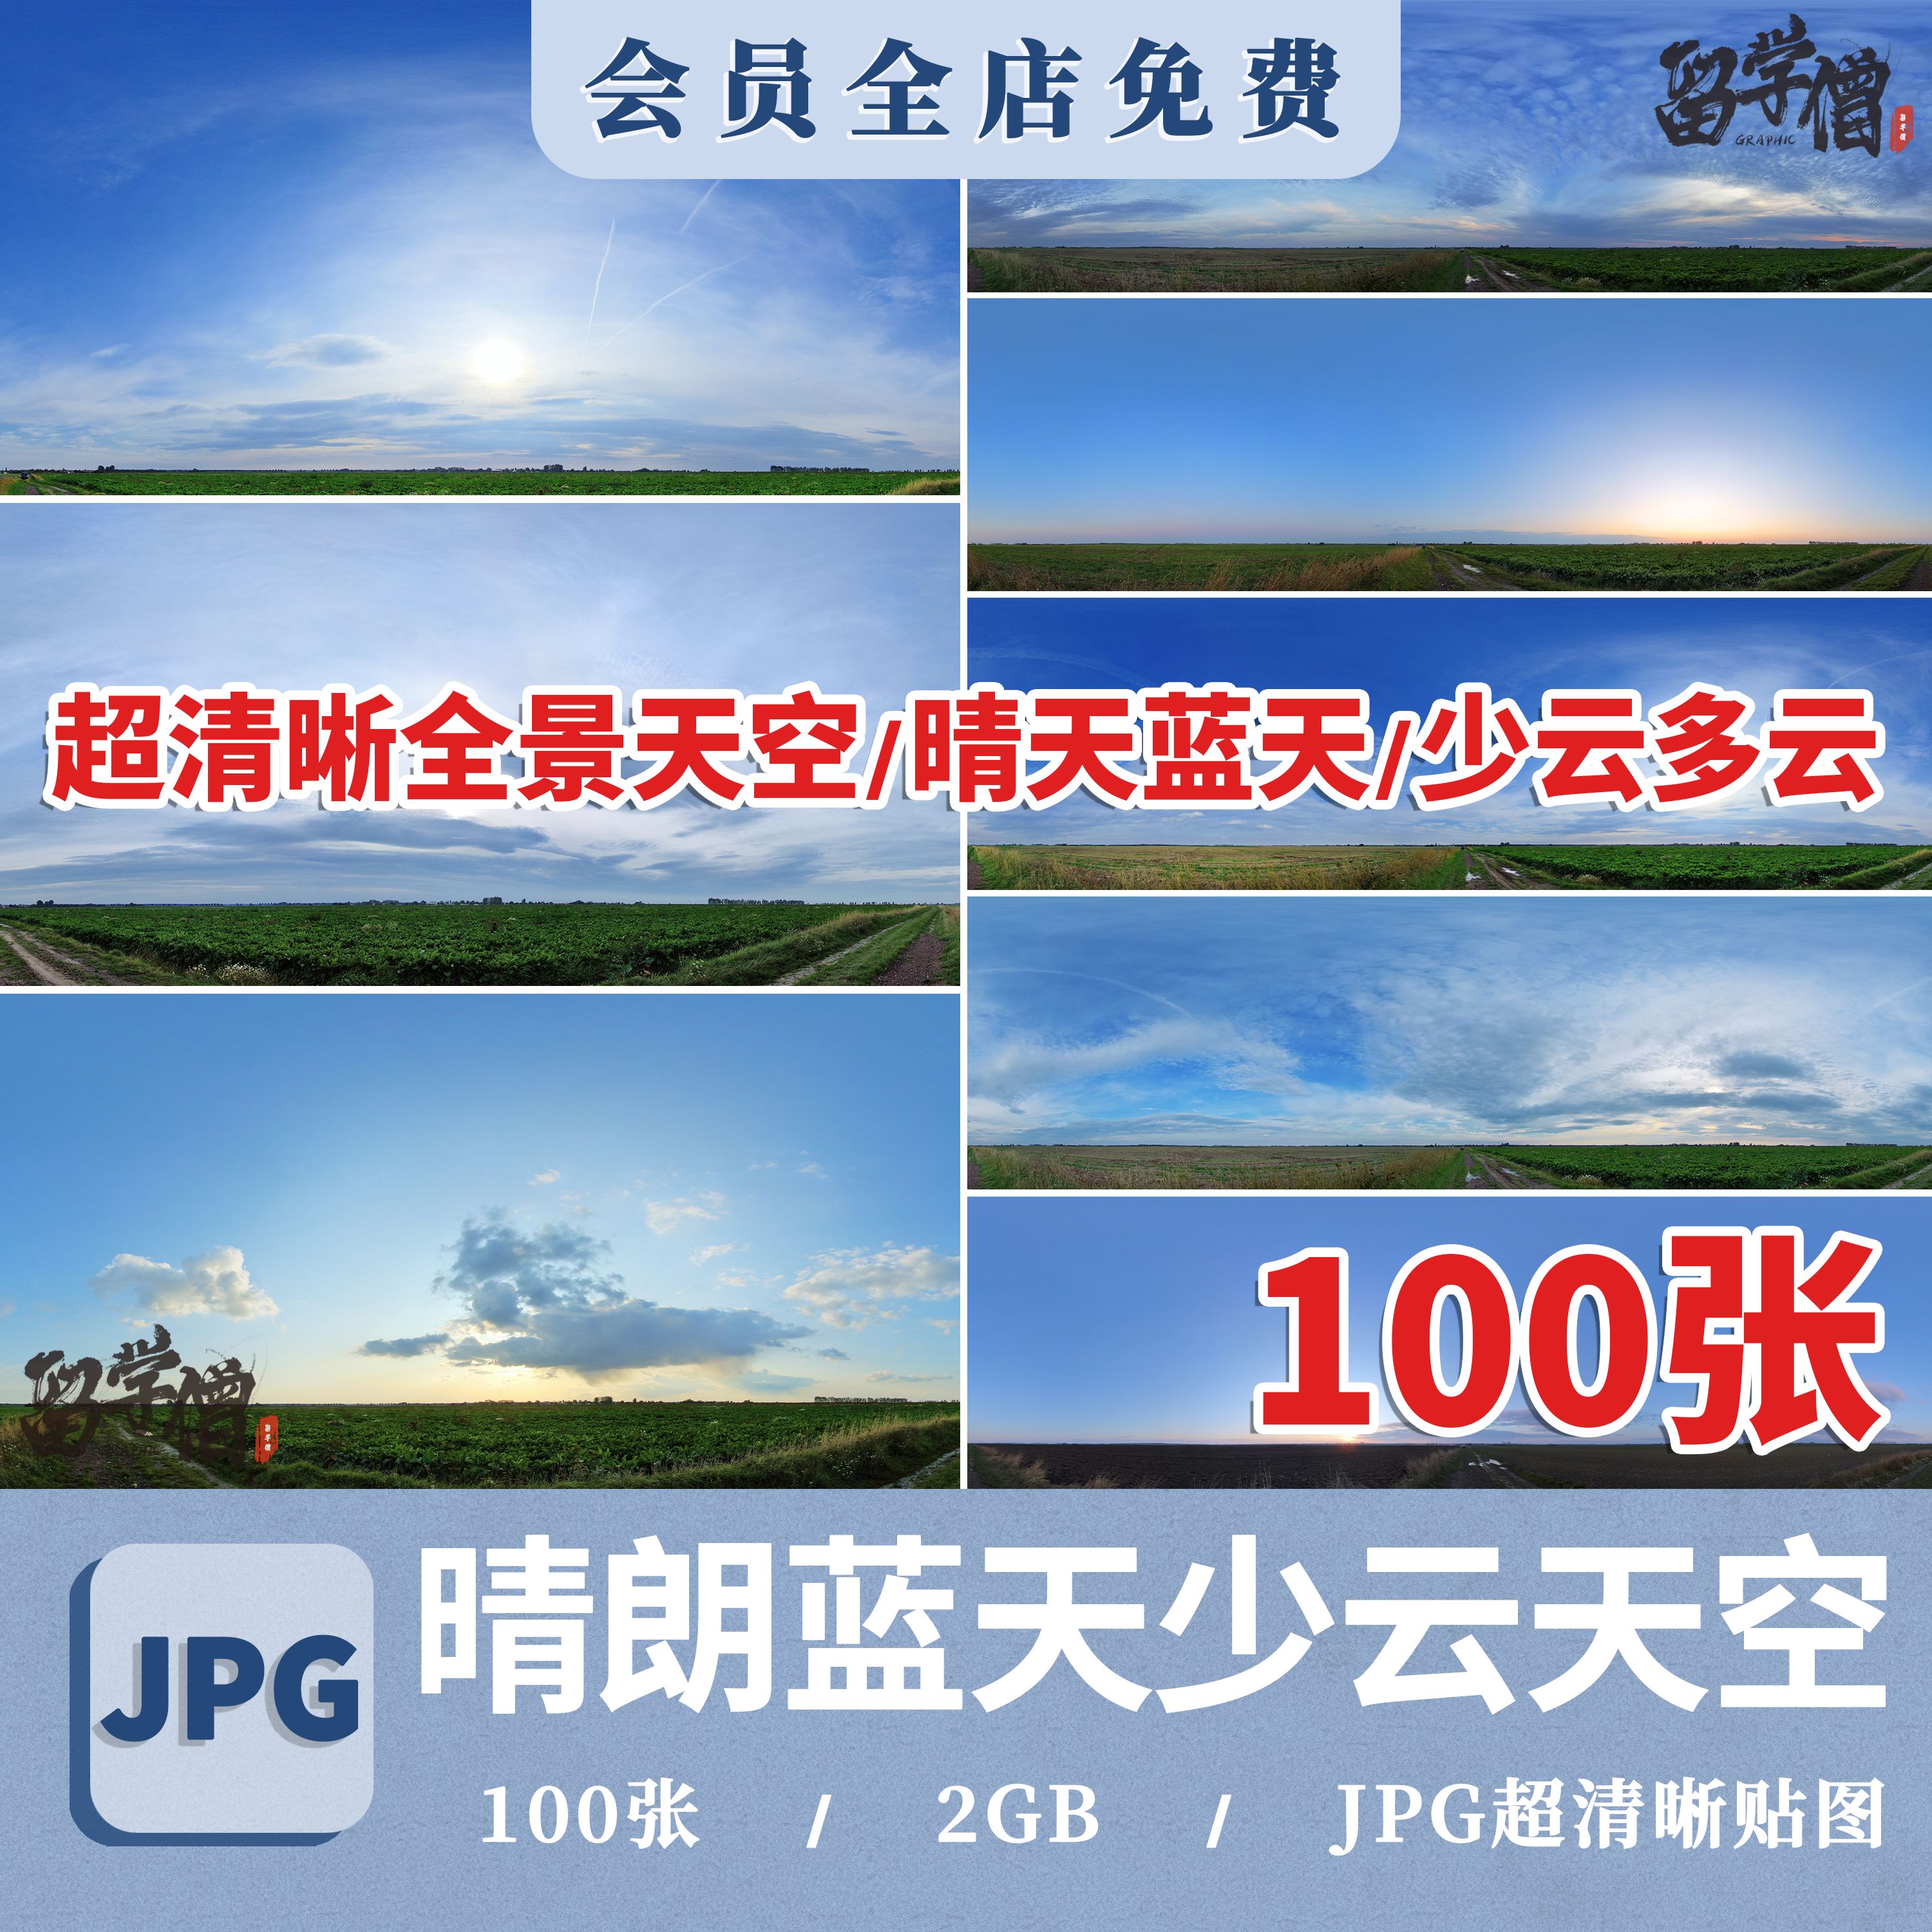 全景天空超清图片蓝天晴天高分辨率超高清天空贴图背景素材JPG